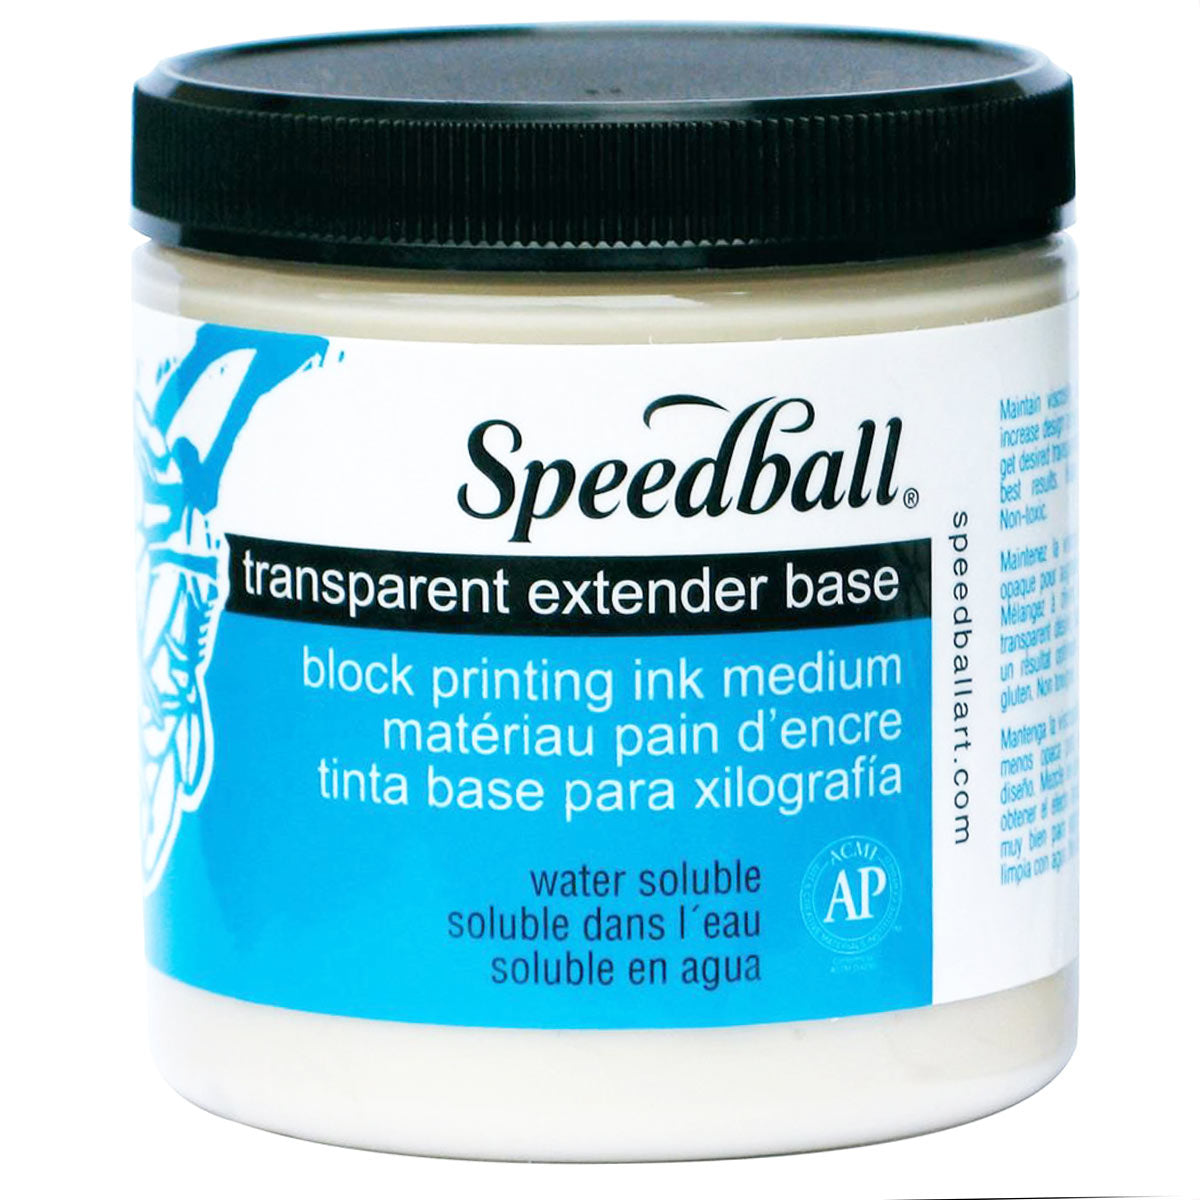 Speedball - in water oplosbaar blokdruk inkt extender 236 ml (8oz)